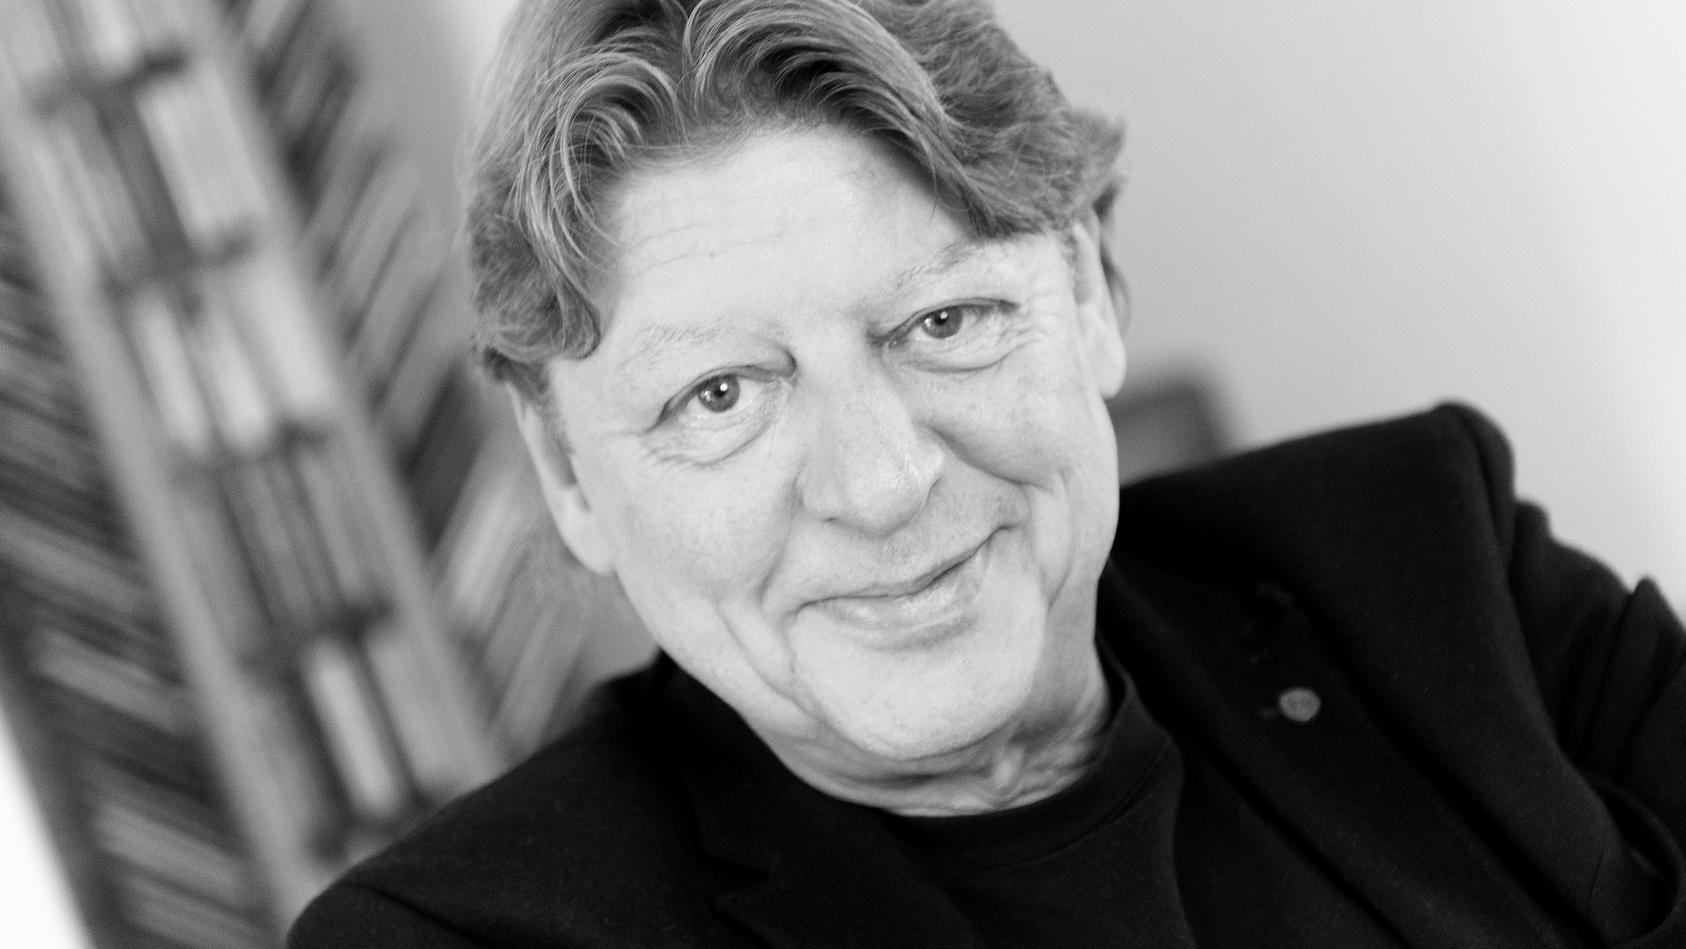 Walter Freiwald ist vielen aus der RTL-Show „Der Preis ist heiß“ (1989 - 1997) bekannt. Auch im Dschungelcamp war der Moderator 2015 noch zu sehen.